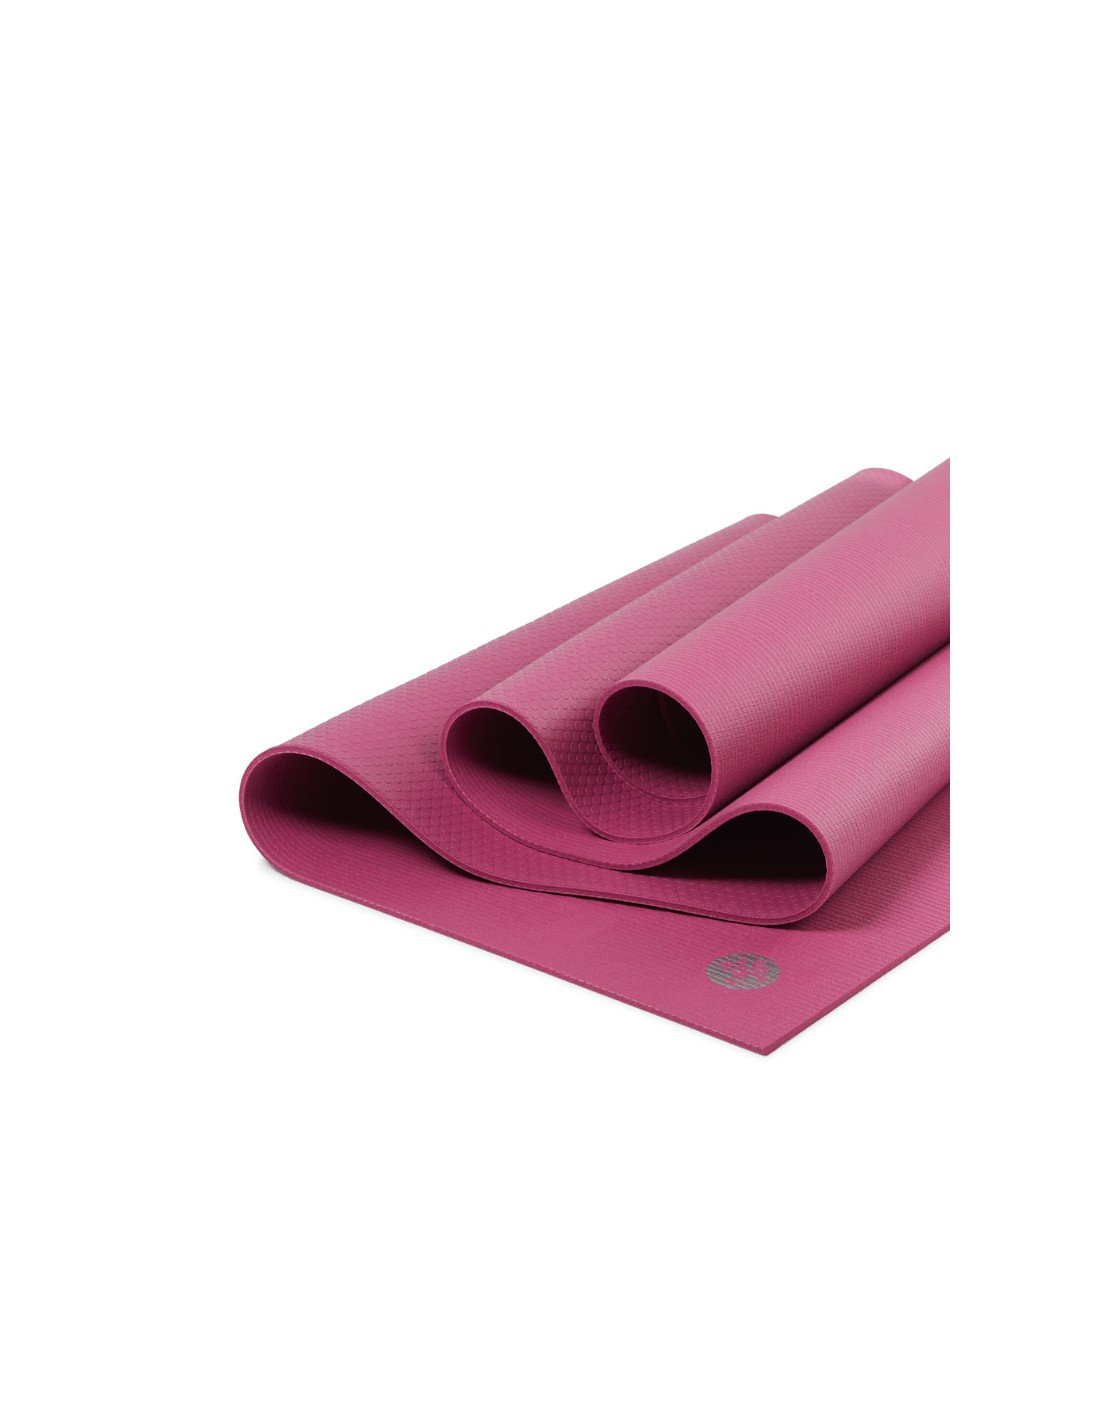 Manduka prolite® yoga mat 4.7mm - MAJESTY PINK — Nalu Yoga